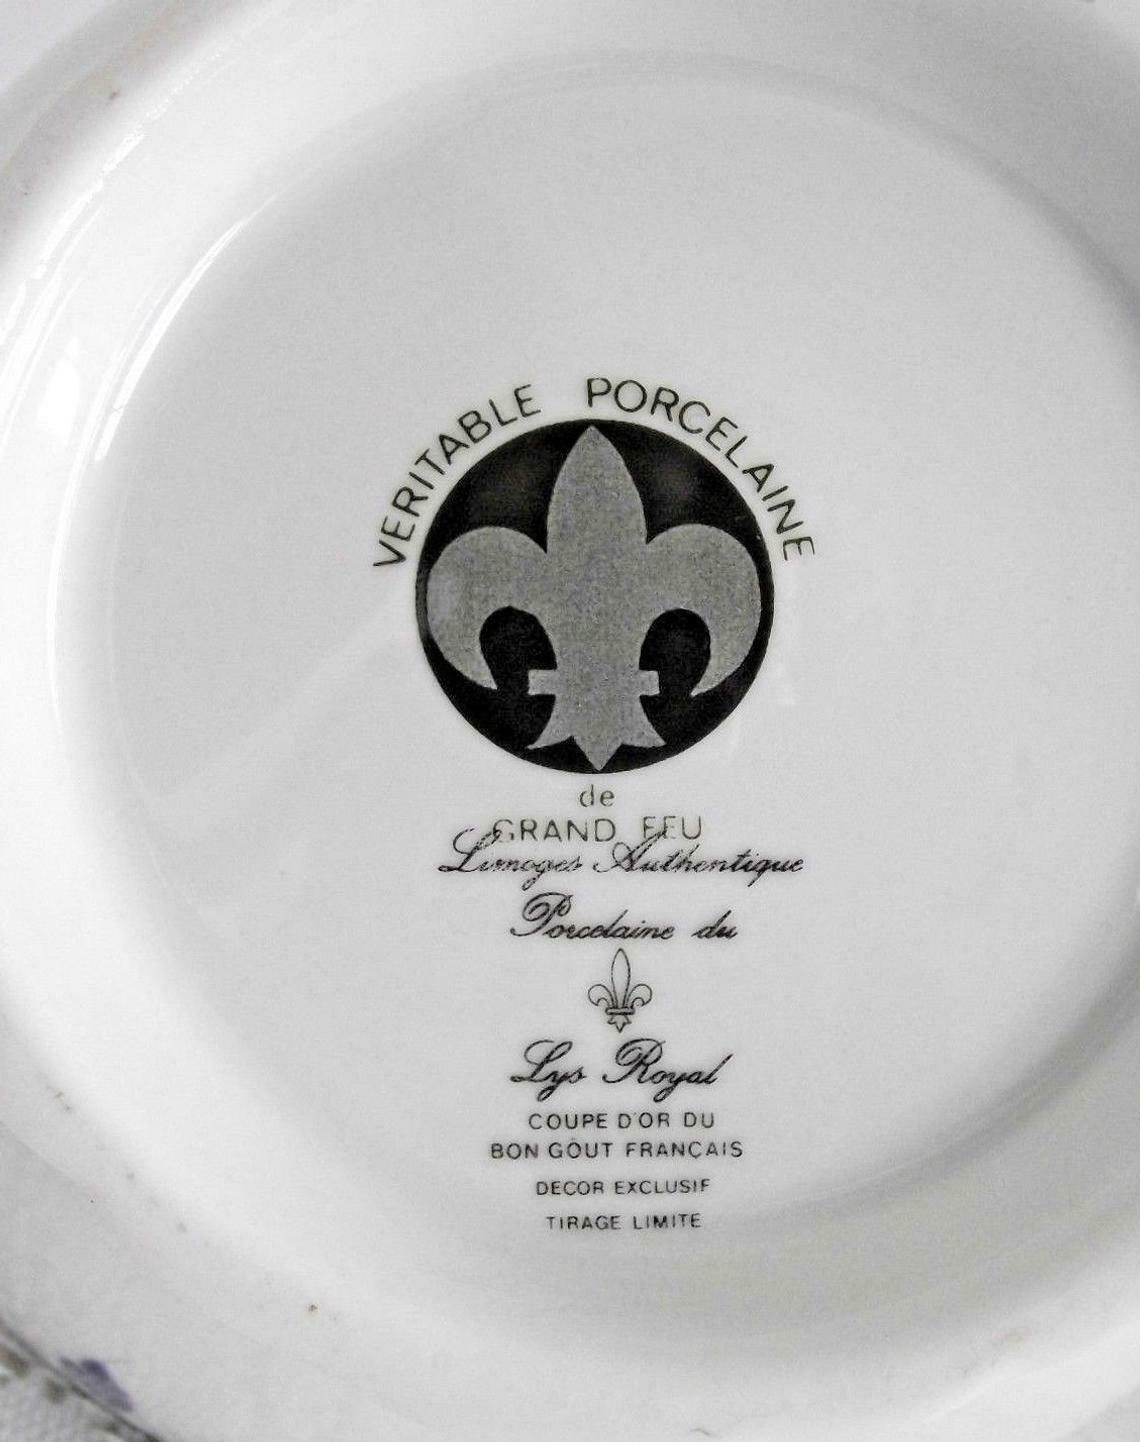 bonbonniere Limoges authentique porcelaine du lys royal 